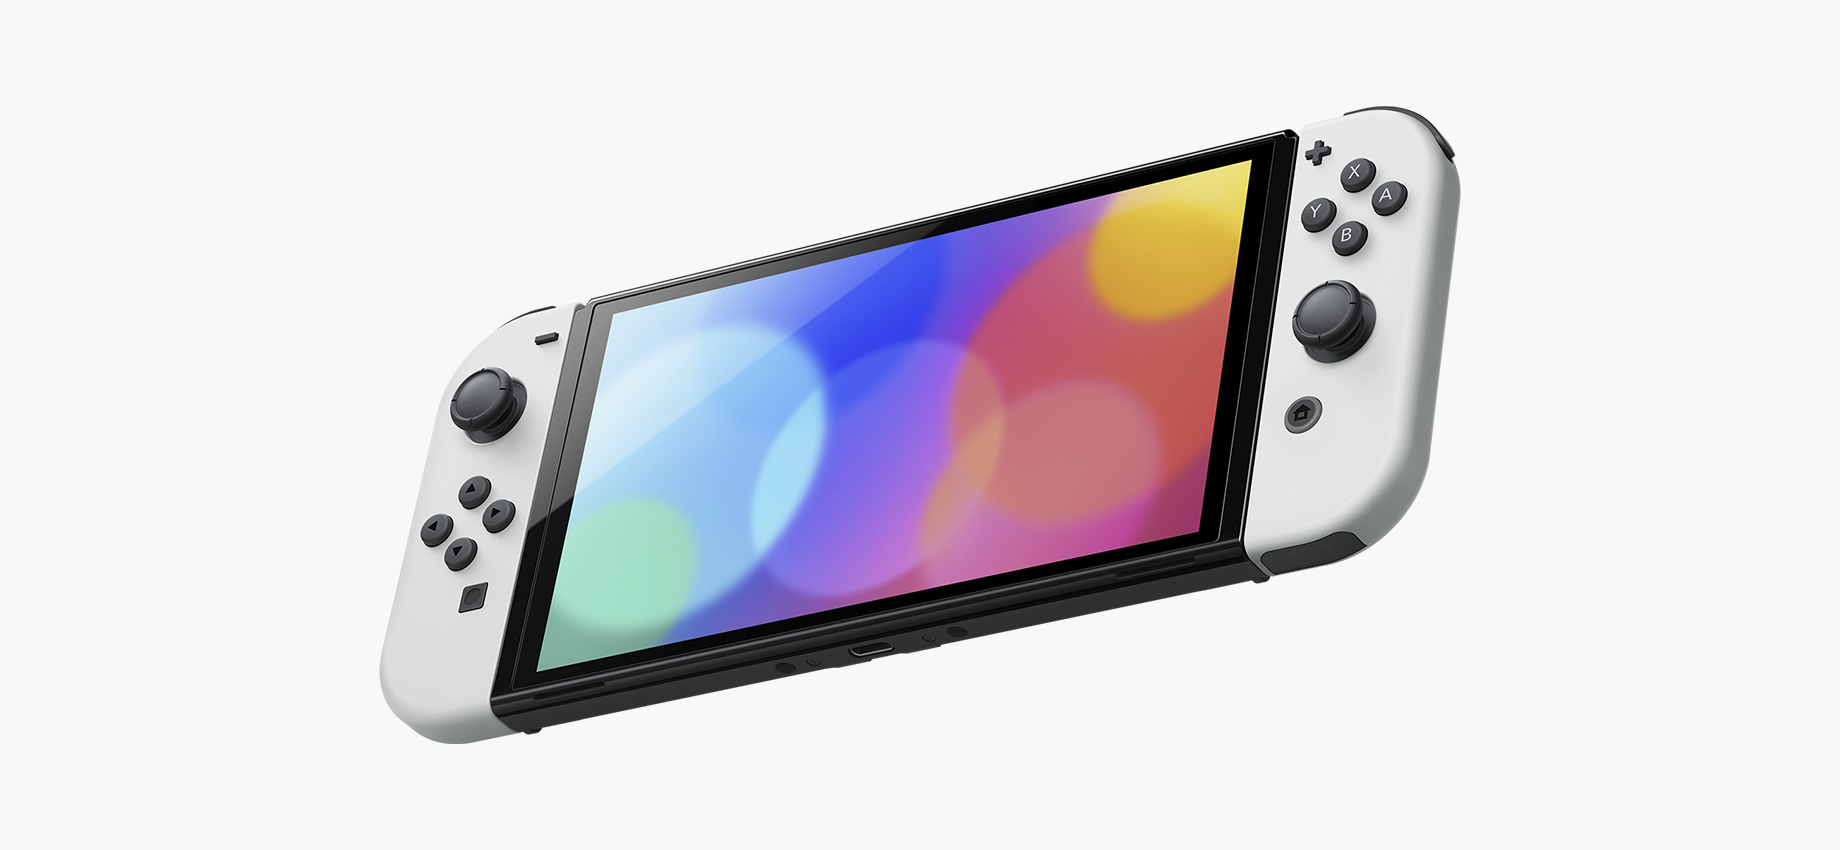 Представлена Nintendo Switch с увеличенным экраном